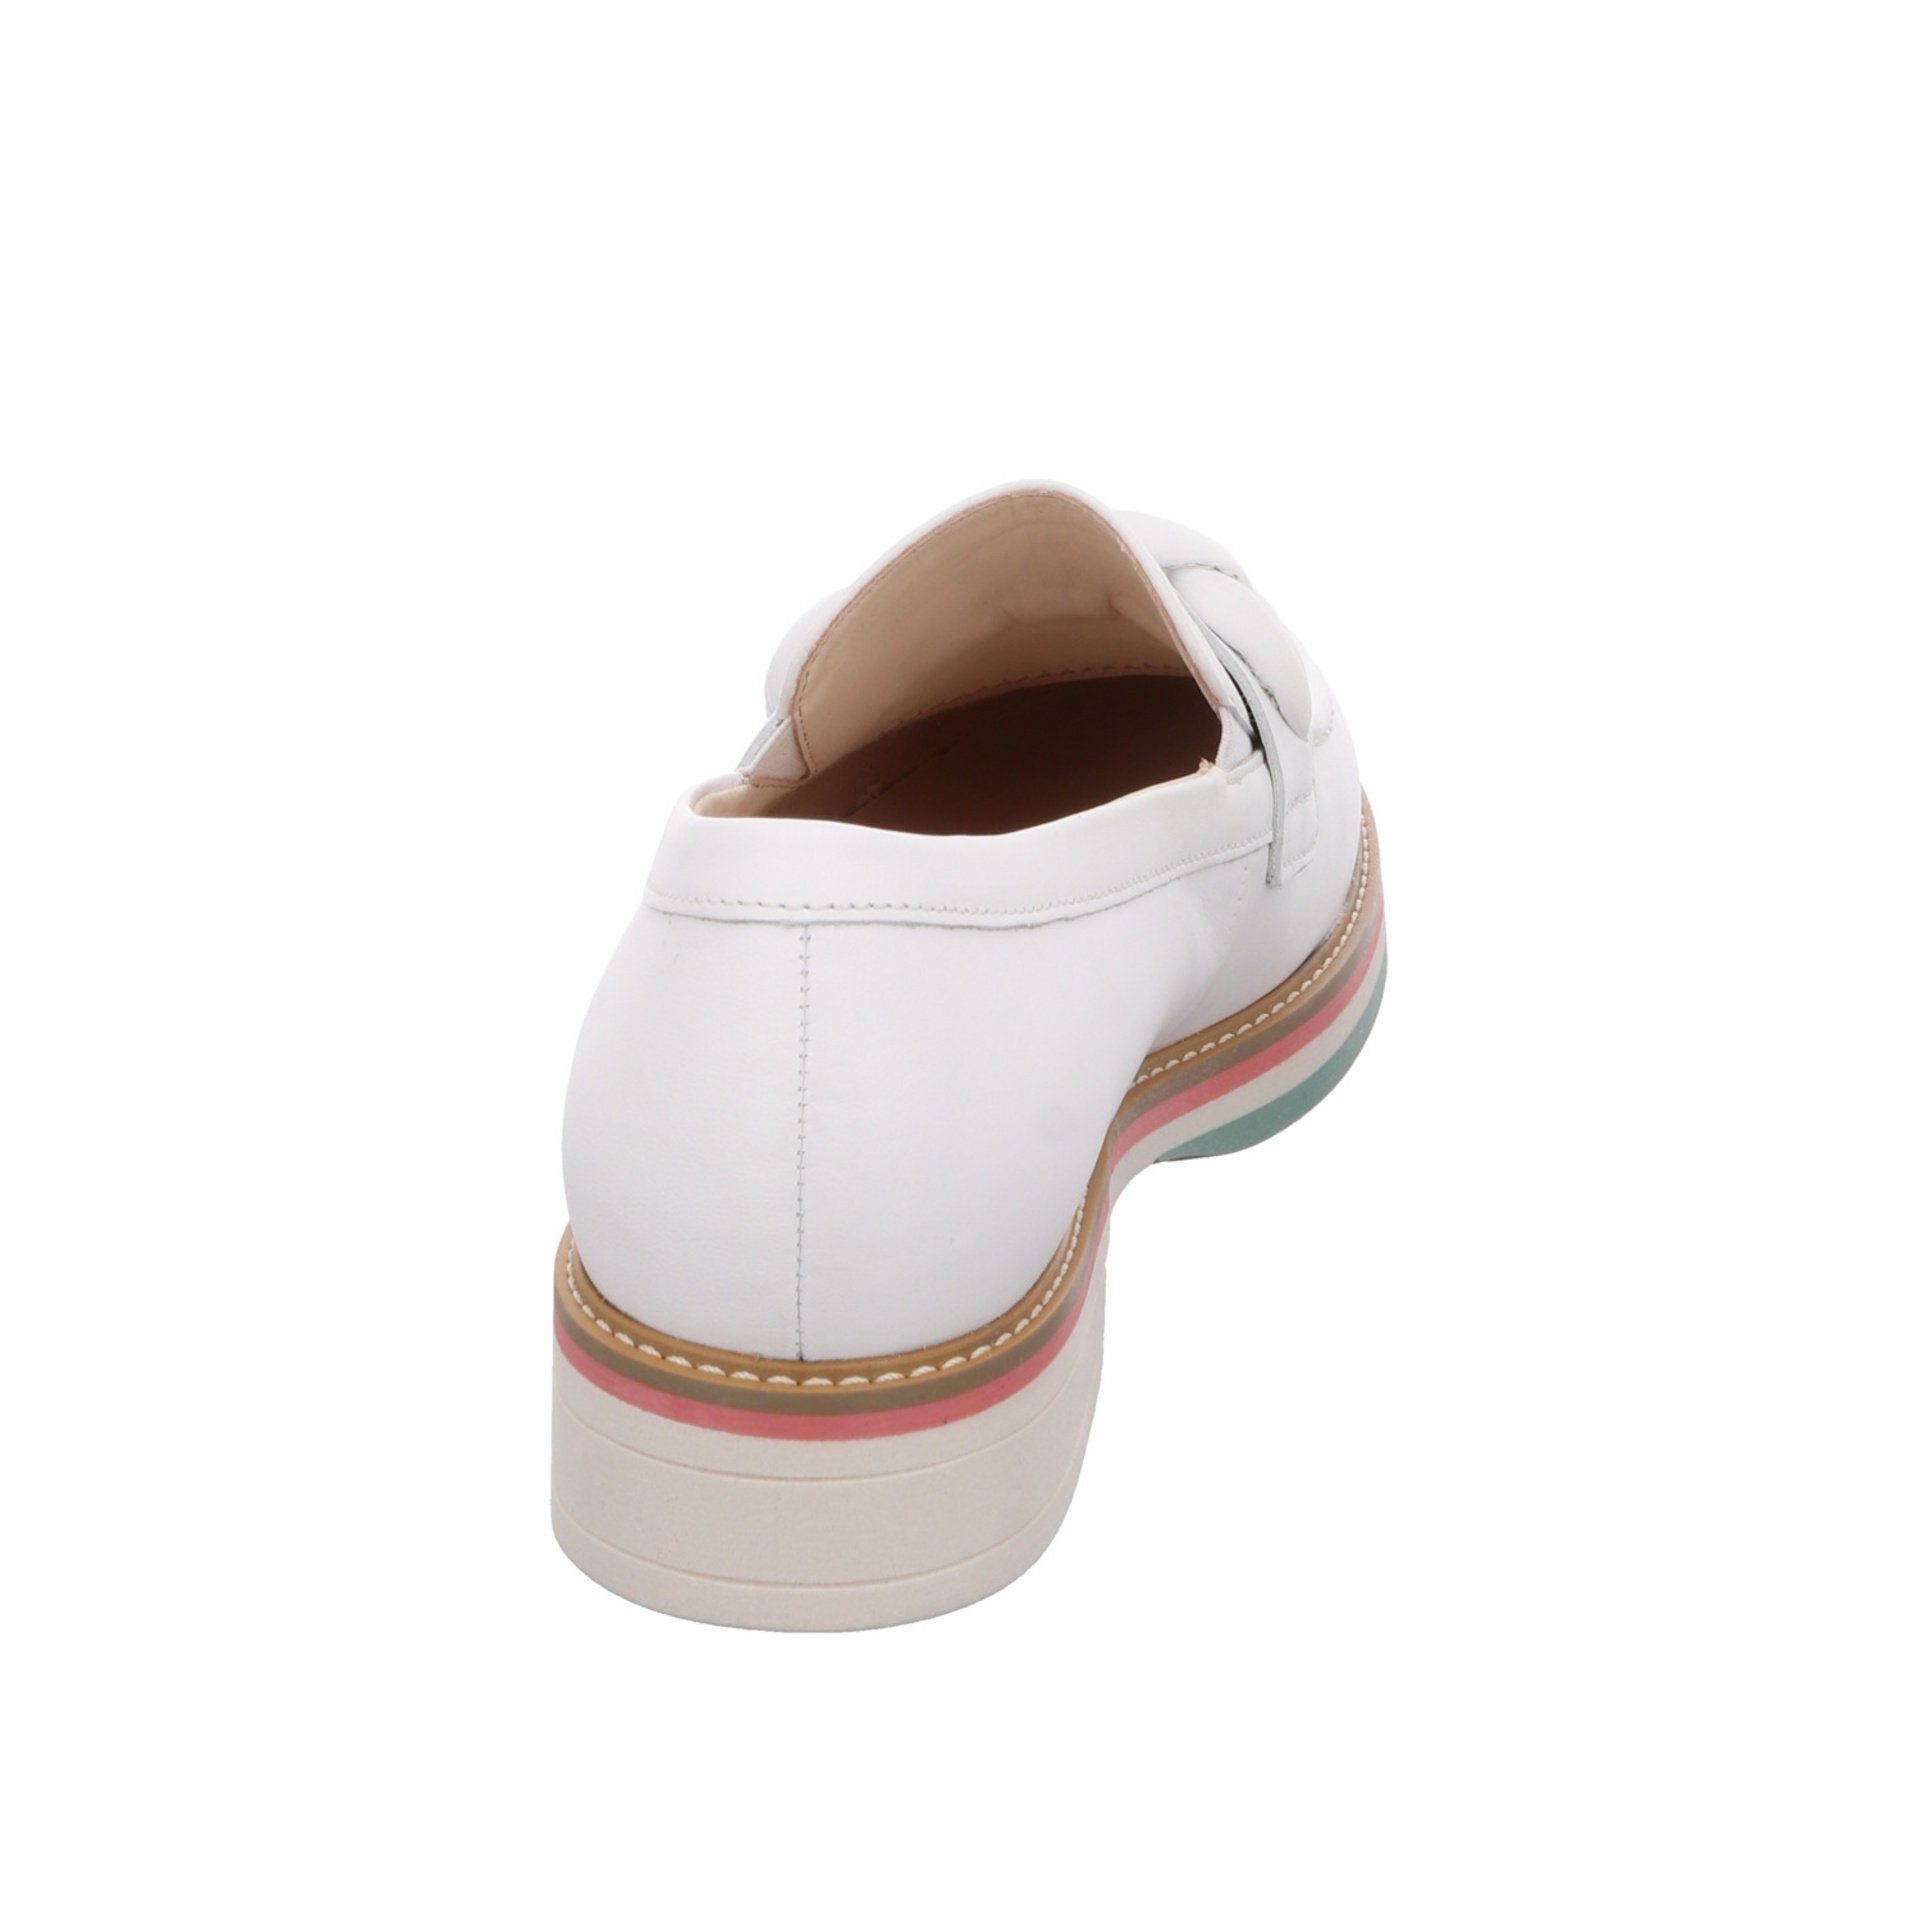 Schuhe Weiß Gabor (weiss Damen Glattleder 50) Slipper Florenz / Slipper Slipper